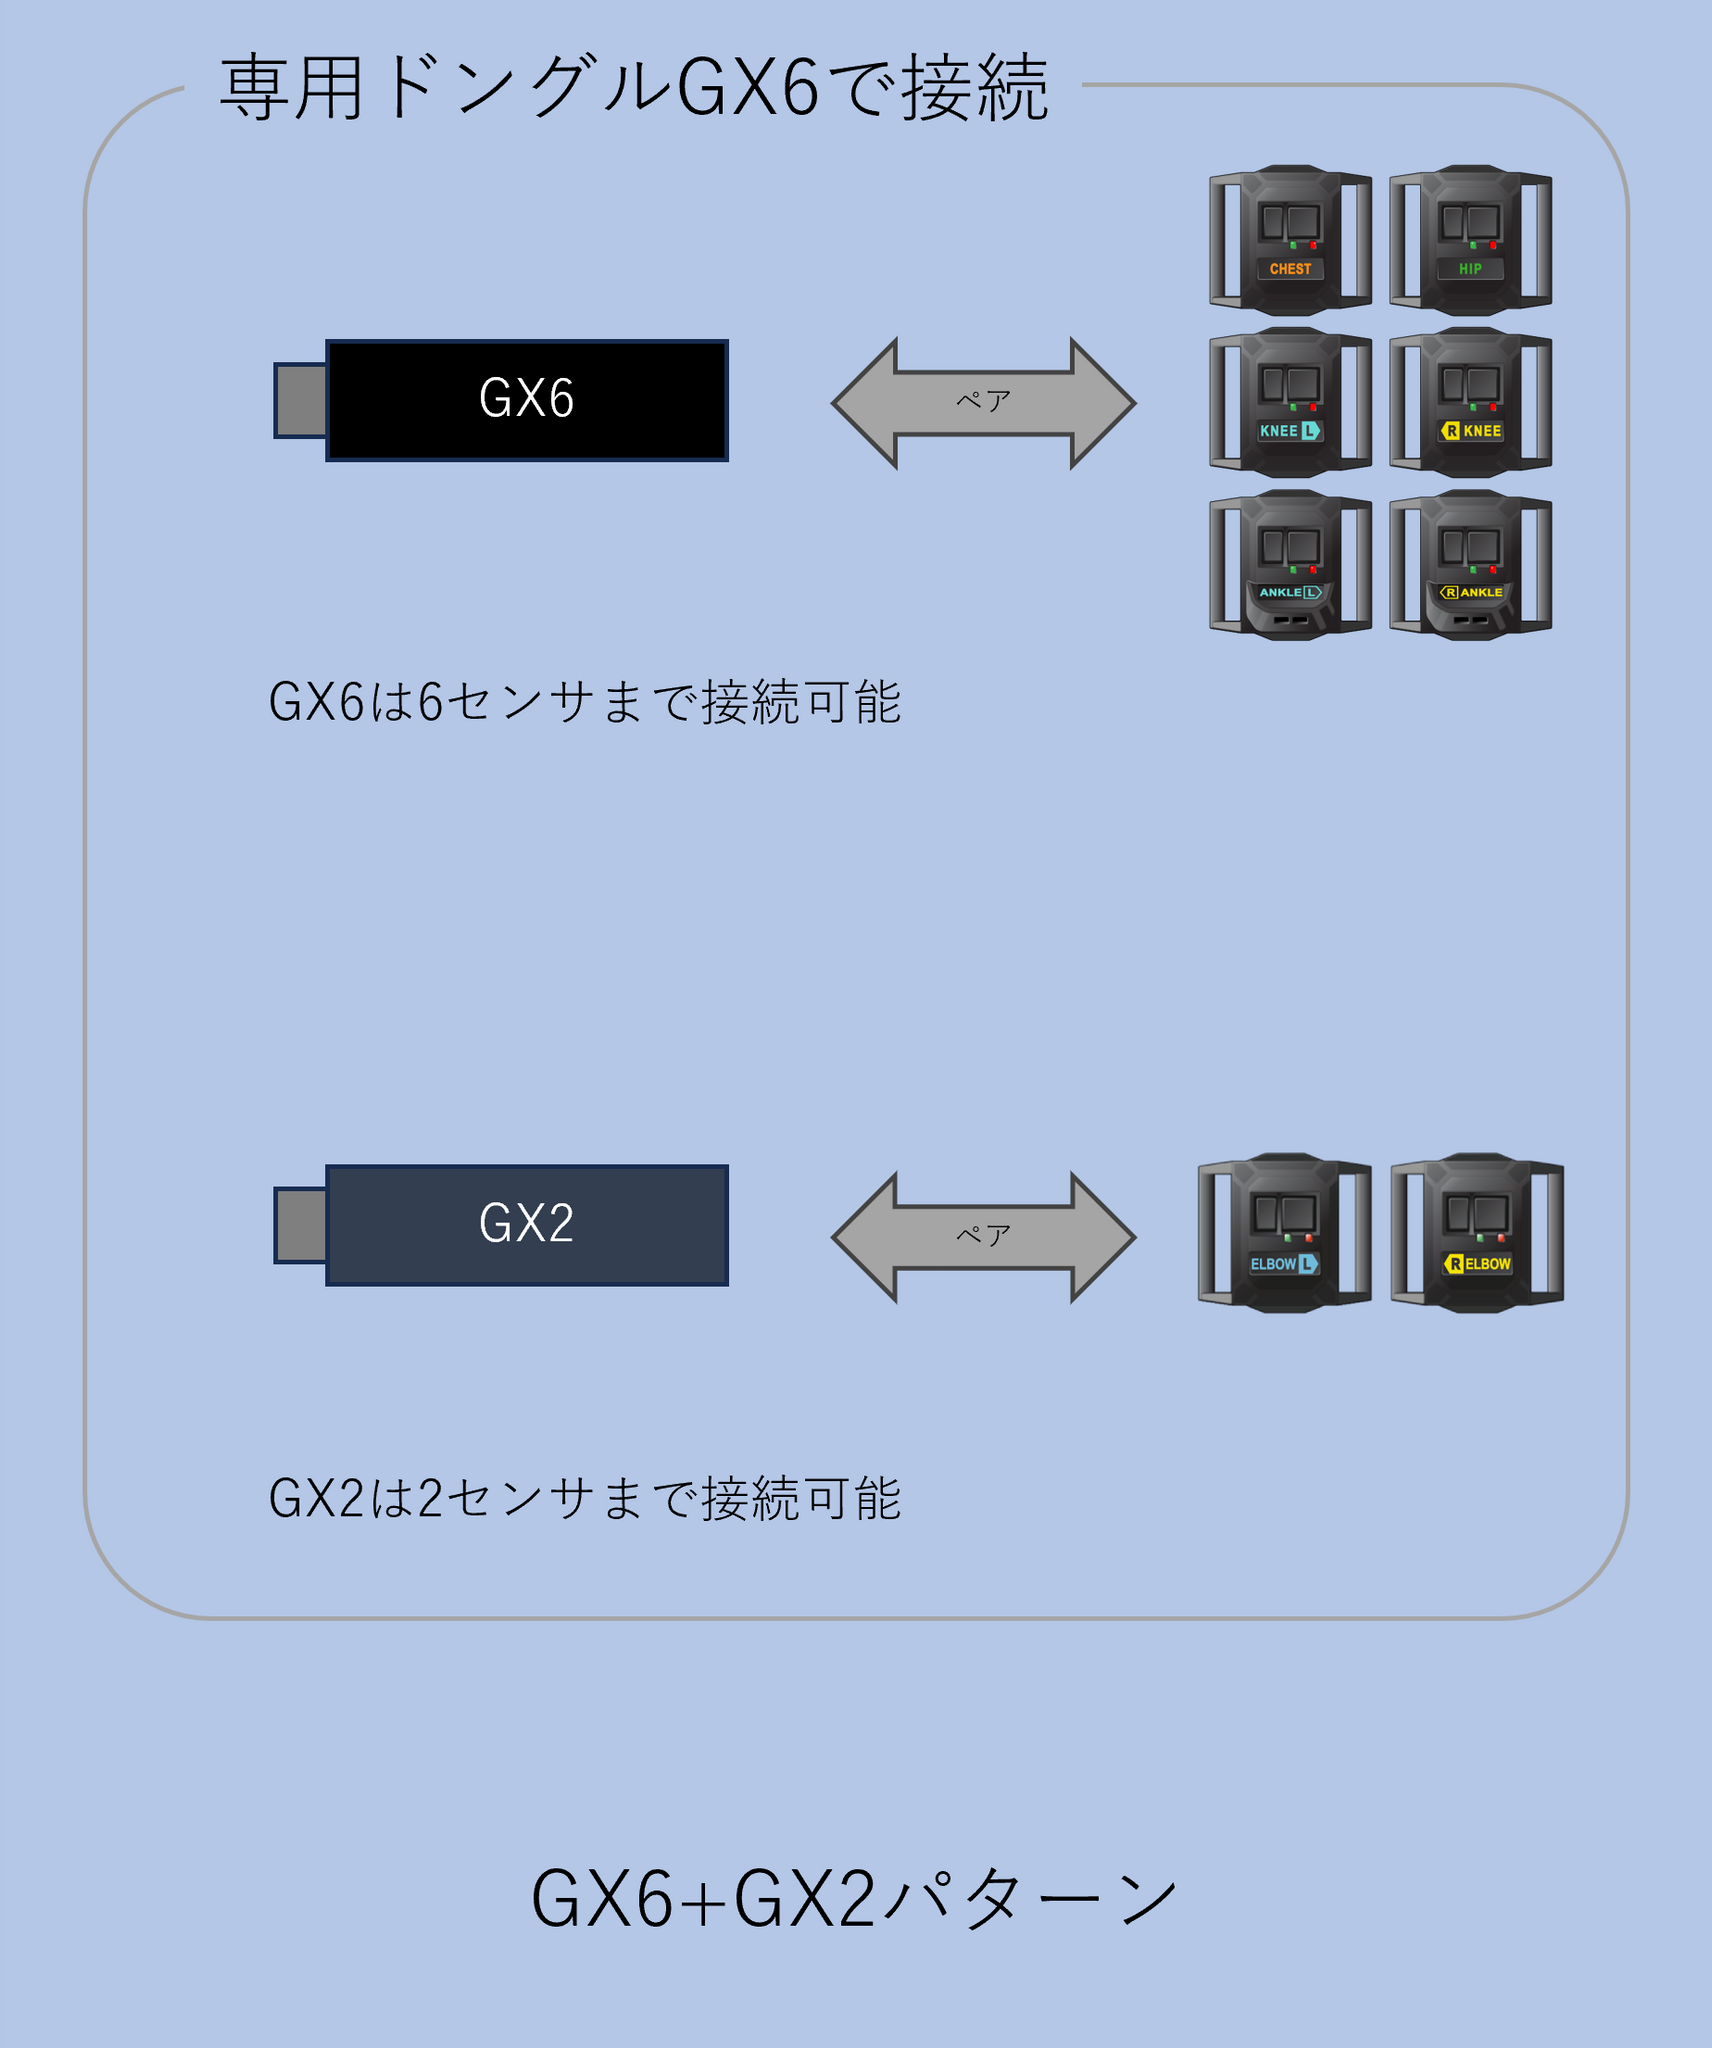 スマホ・タブレット・パソコンHaritoraX ワイヤレス＋専用通信ドングルGX6